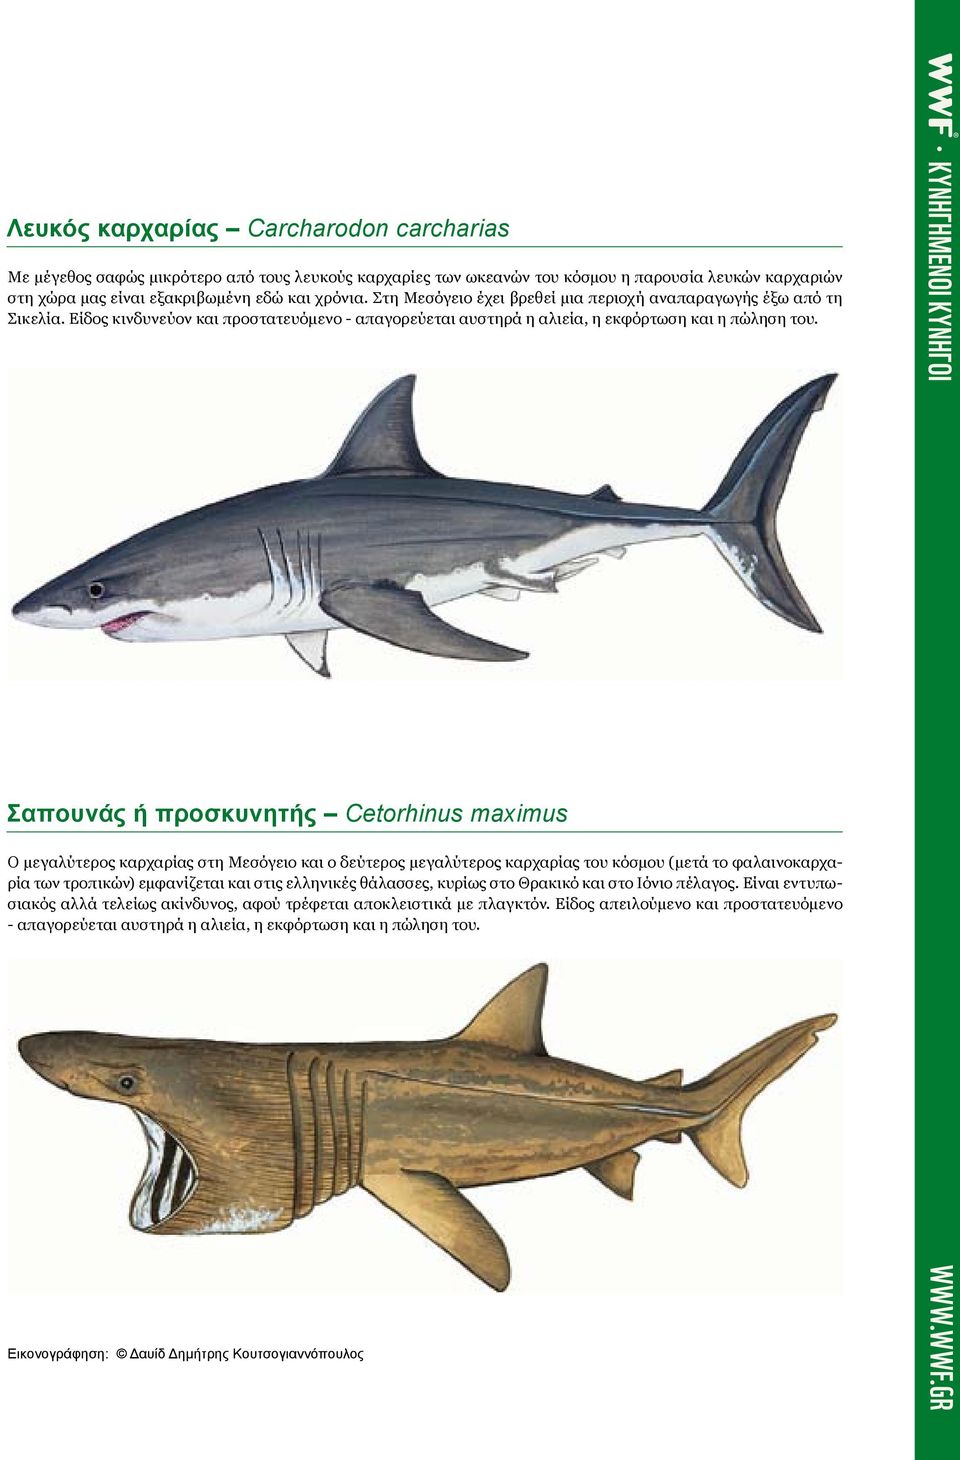 Σαπουνάς ή προσκυνητής Cetorhinus maximus Ο μεγαλύτερος καρχαρίας στη Μεσόγειο και ο δεύτερος μεγαλύτερος καρχαρίας του κόσμου (μετά το φαλαινοκαρχαρία των τροπικών) εμφανίζεται και στις ελληνικές